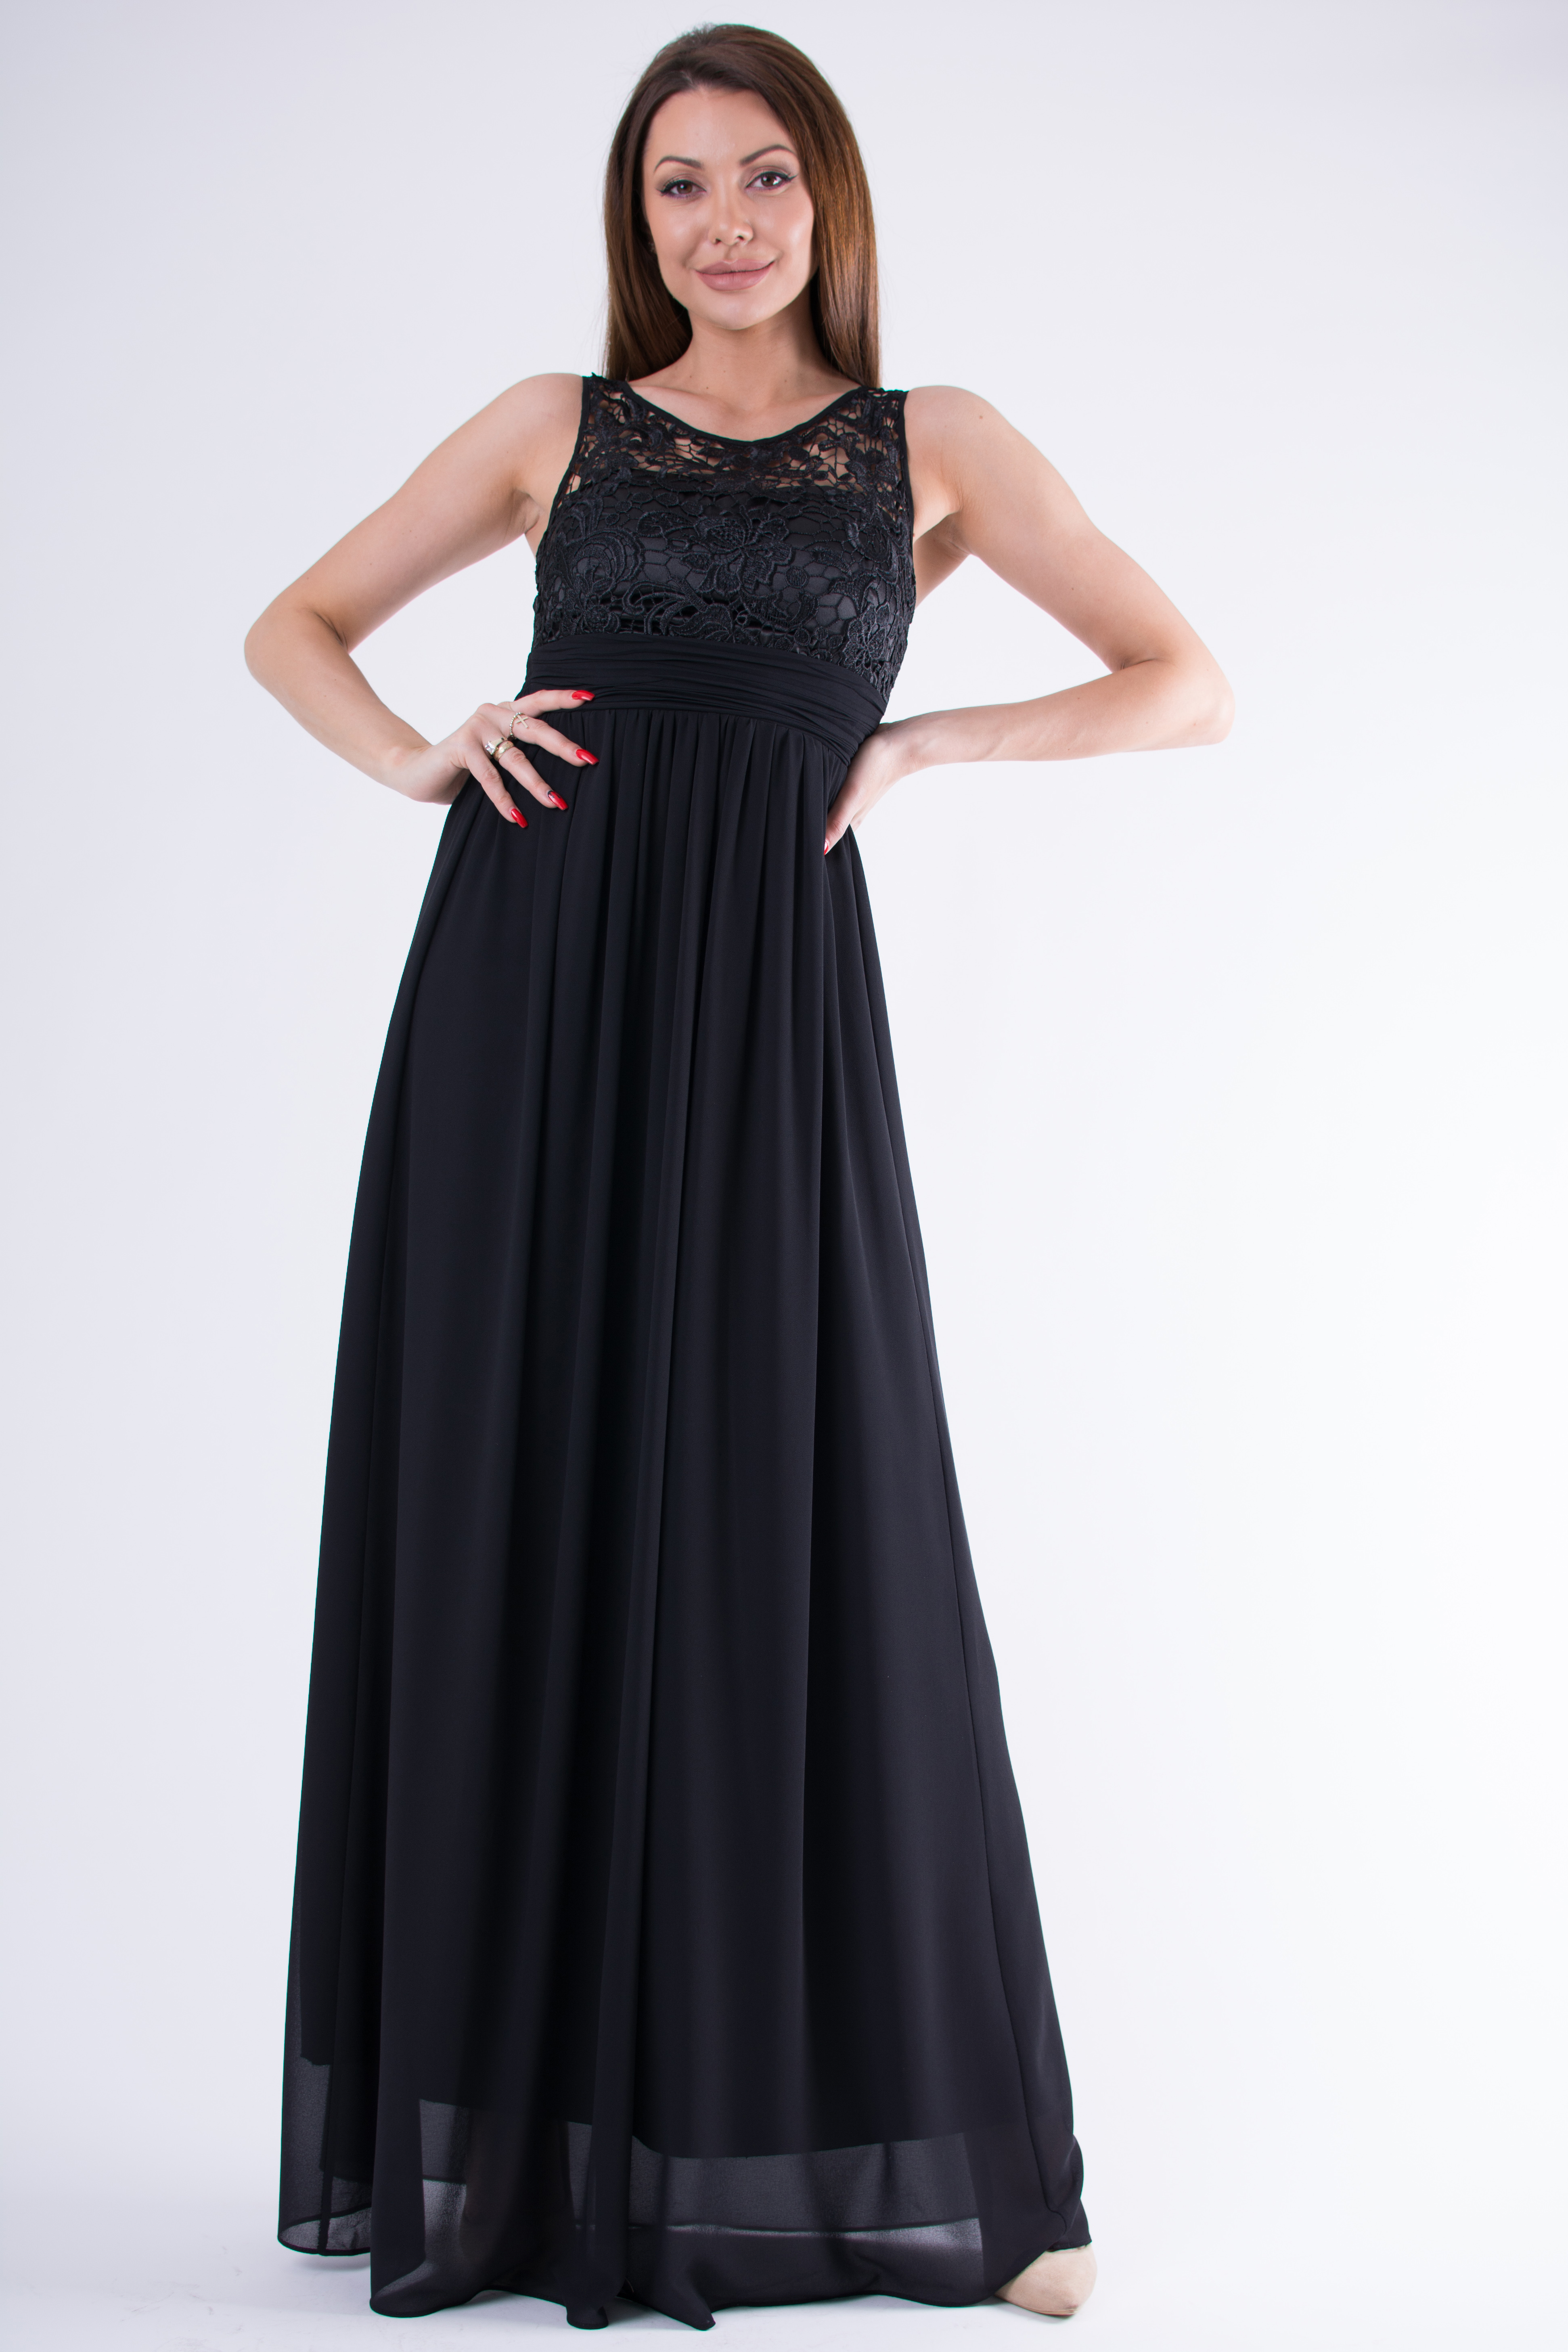 Dámské společenské dlouhé šaty Deborah černé (Dámské šaty)